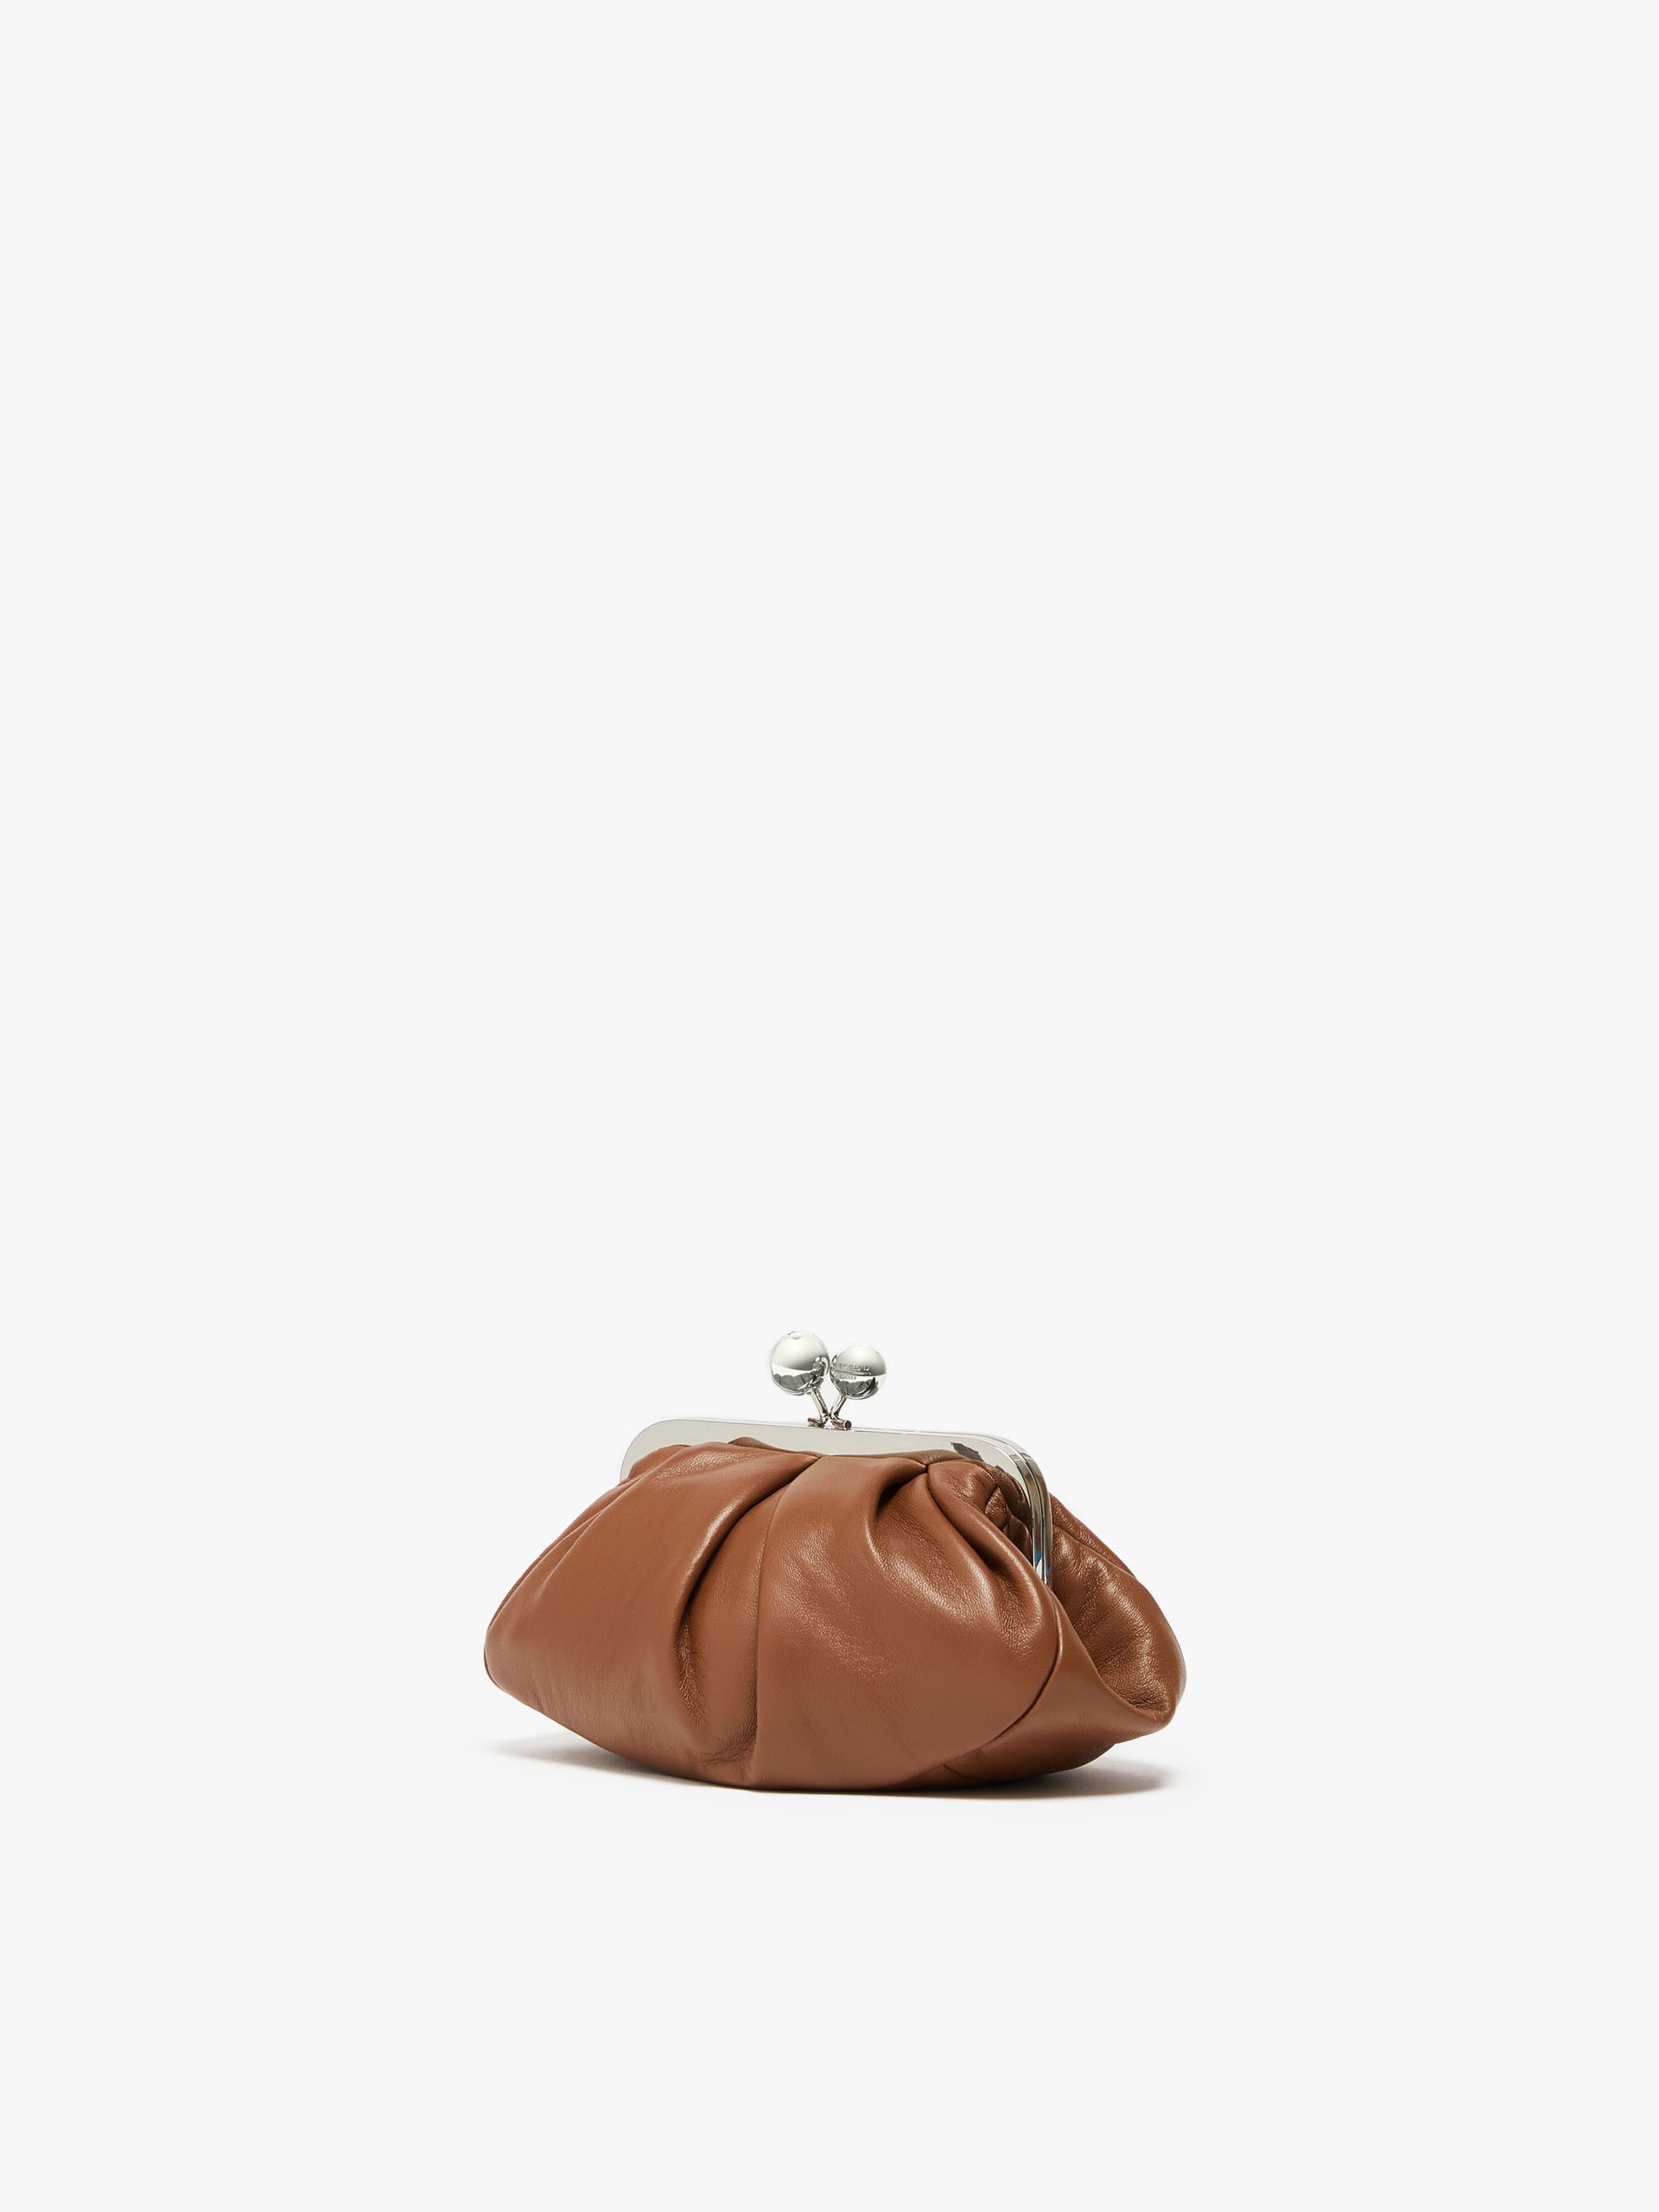 PRATI Small Pasticcino Bag in nappa leather - 2